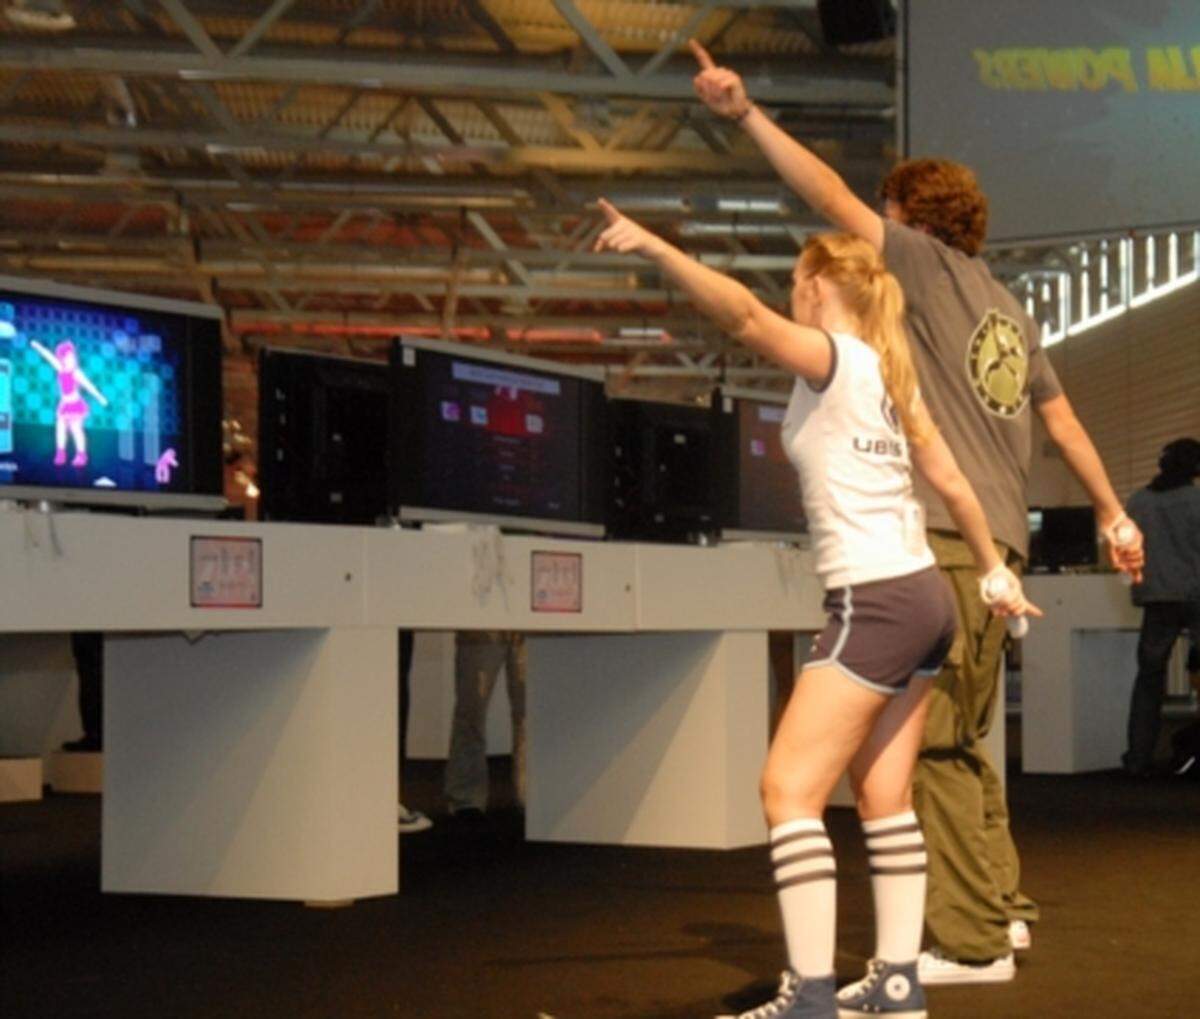 Etwas mehr Bewegung verlangt Hersteller Ubisoft von seinen Besuchern. Damit das auch klappt, stellt das Unternehmen sportlich bekleidete Damen bereit, die bei diversen Tanzeinlagen unterstützend zur Seite stehen.